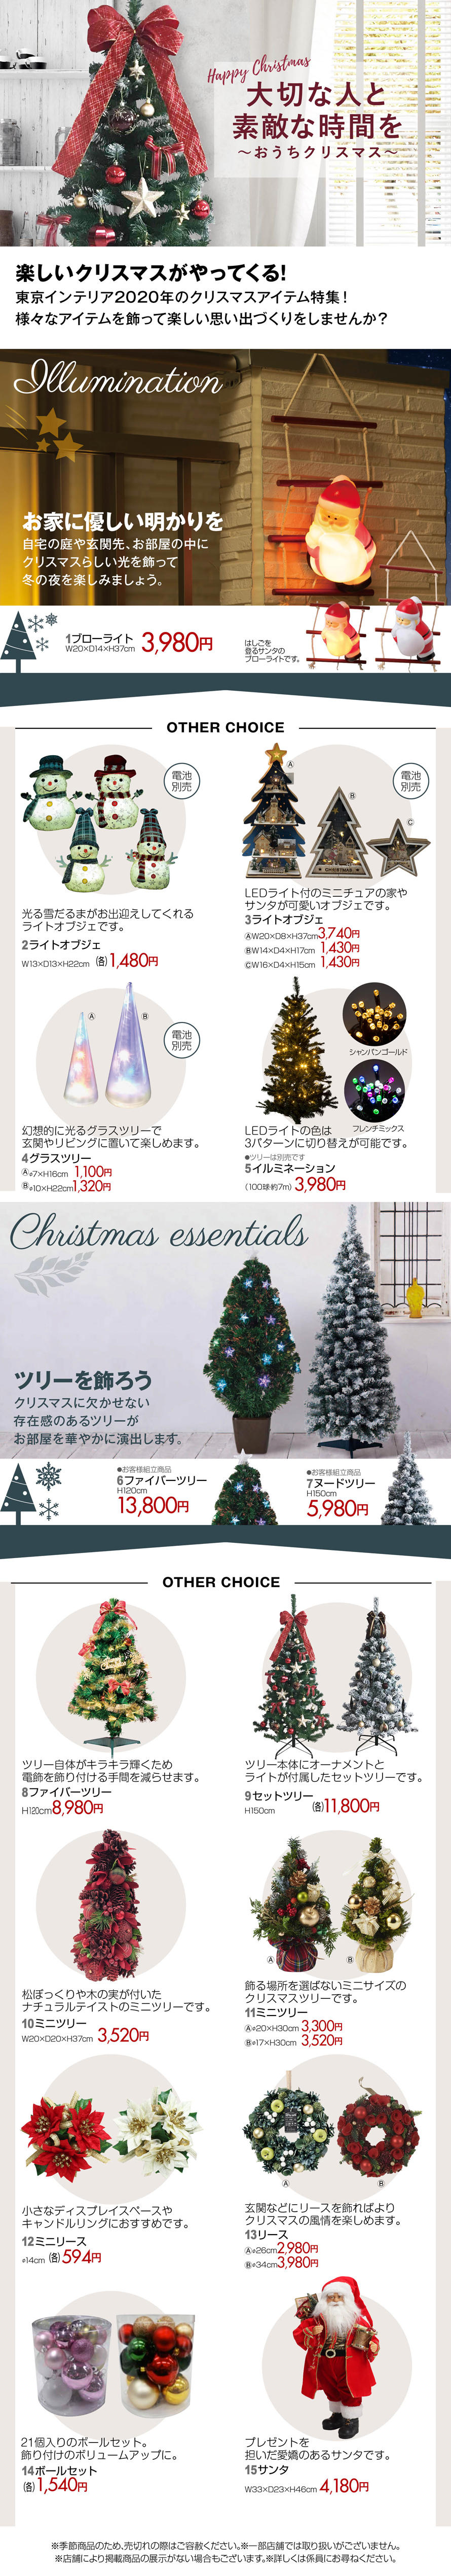 大切な人と素敵な時間を おうちクリスマス 東京インテリア家具オフィシャルサイト 家具とホームファッション